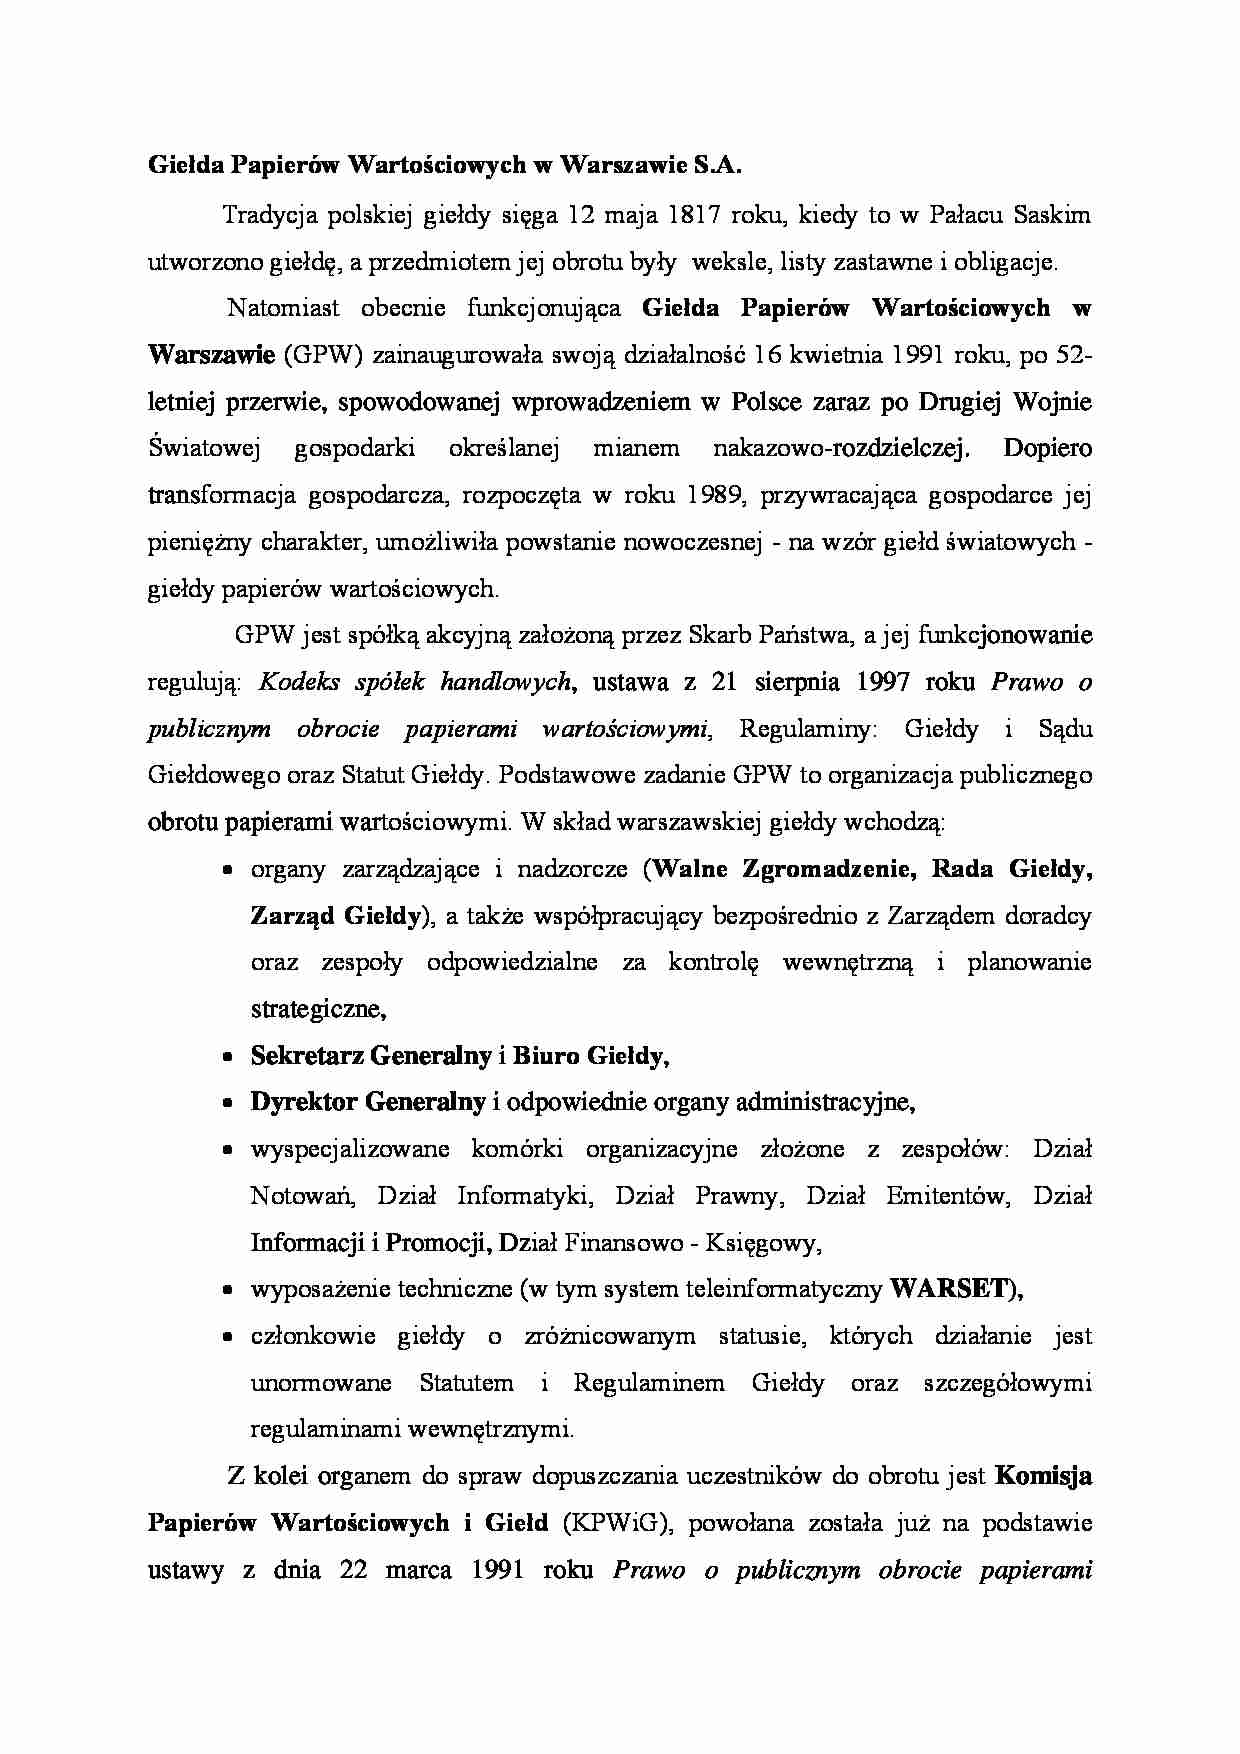 Giełda Papierów Wartościowych w Warszawie - Komisja Papierów Wartościowych i Giełd - strona 1